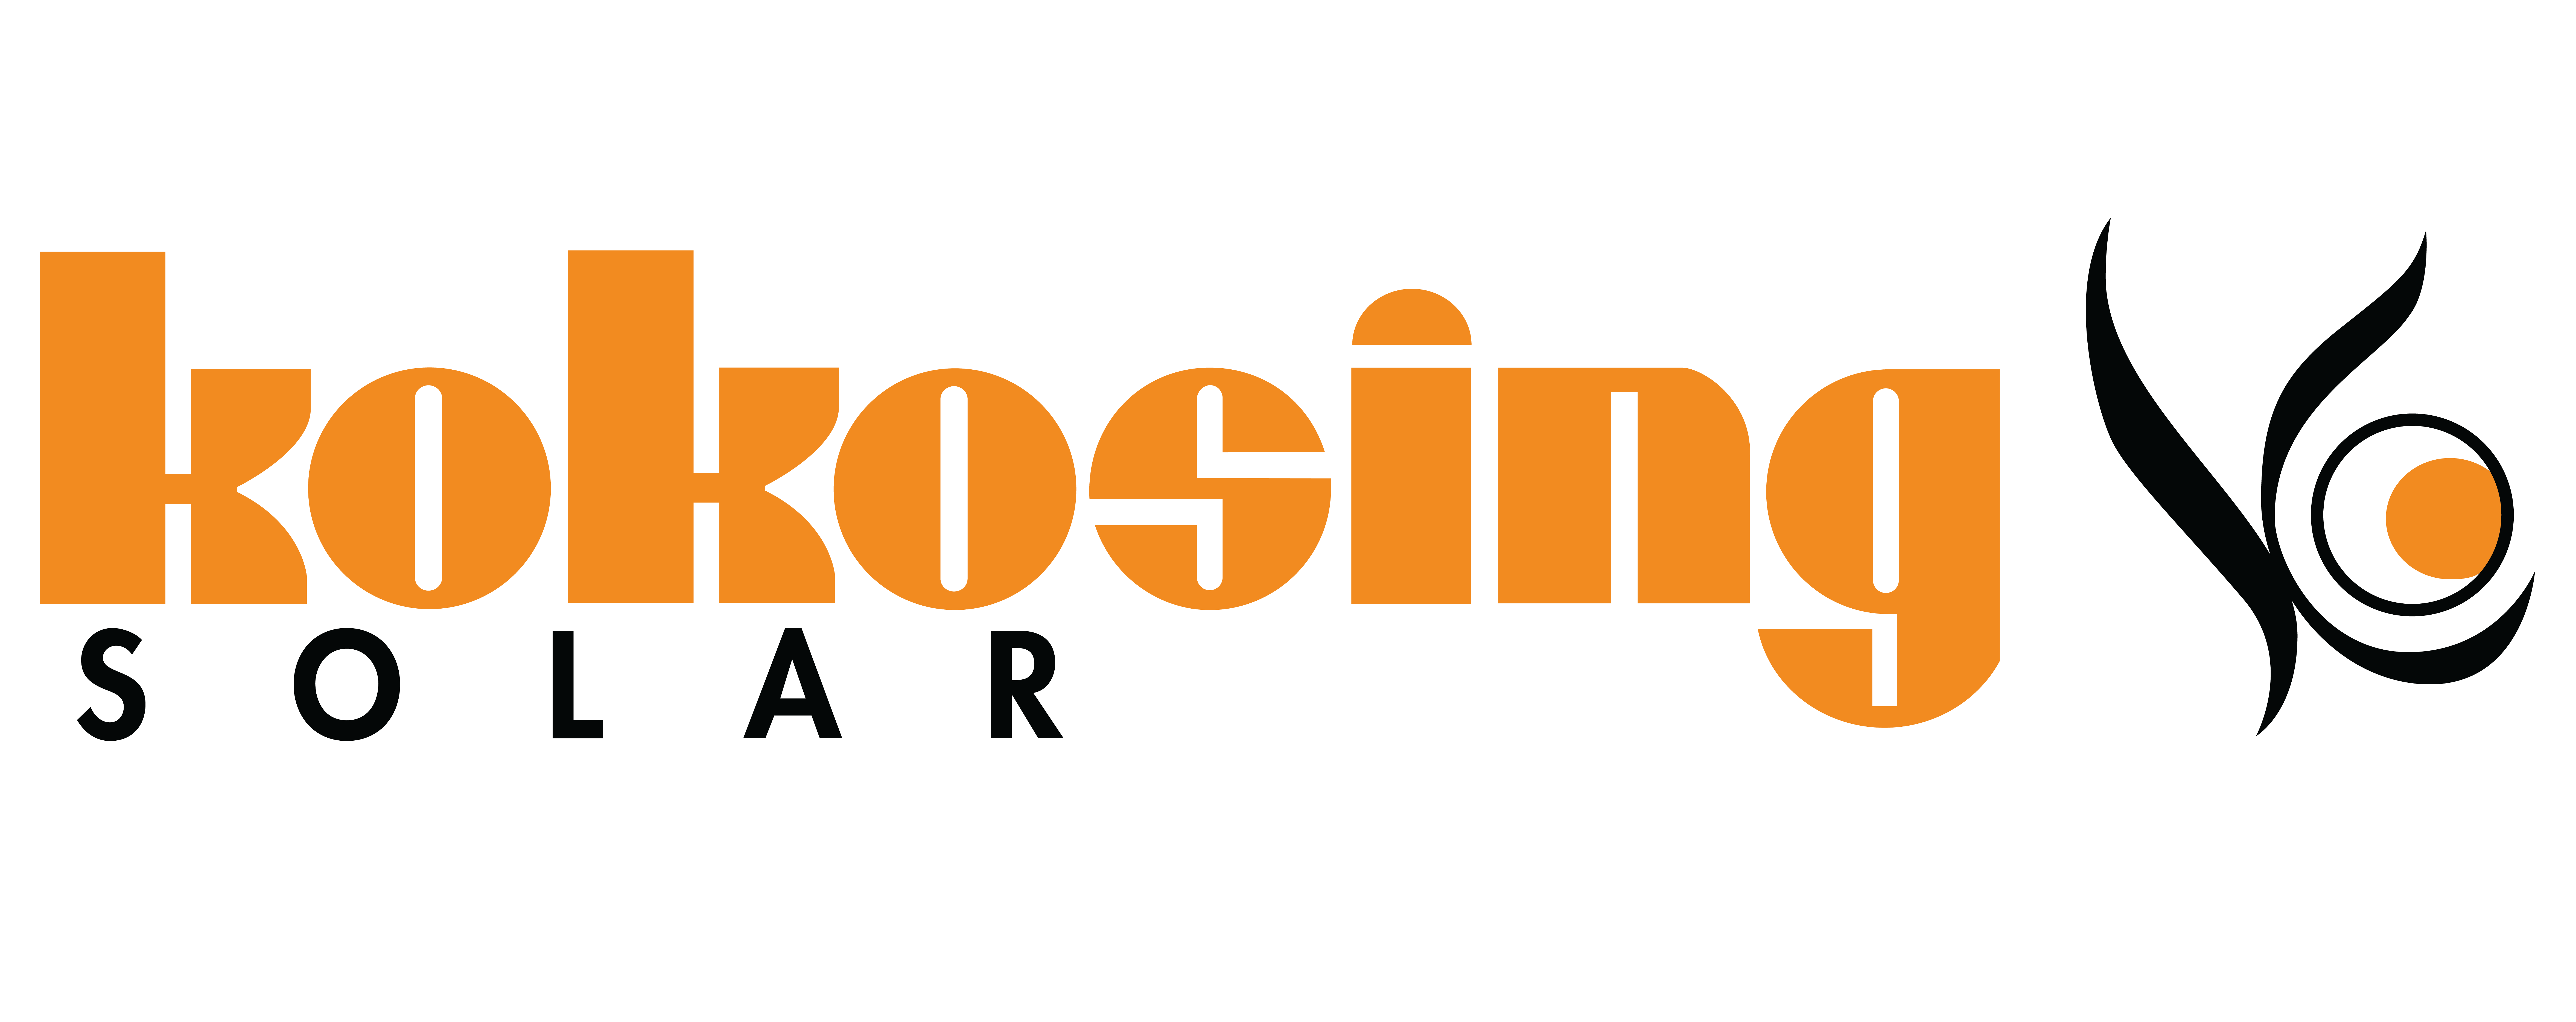 Kokosing Solar (Previously Third Sun Solar) logo